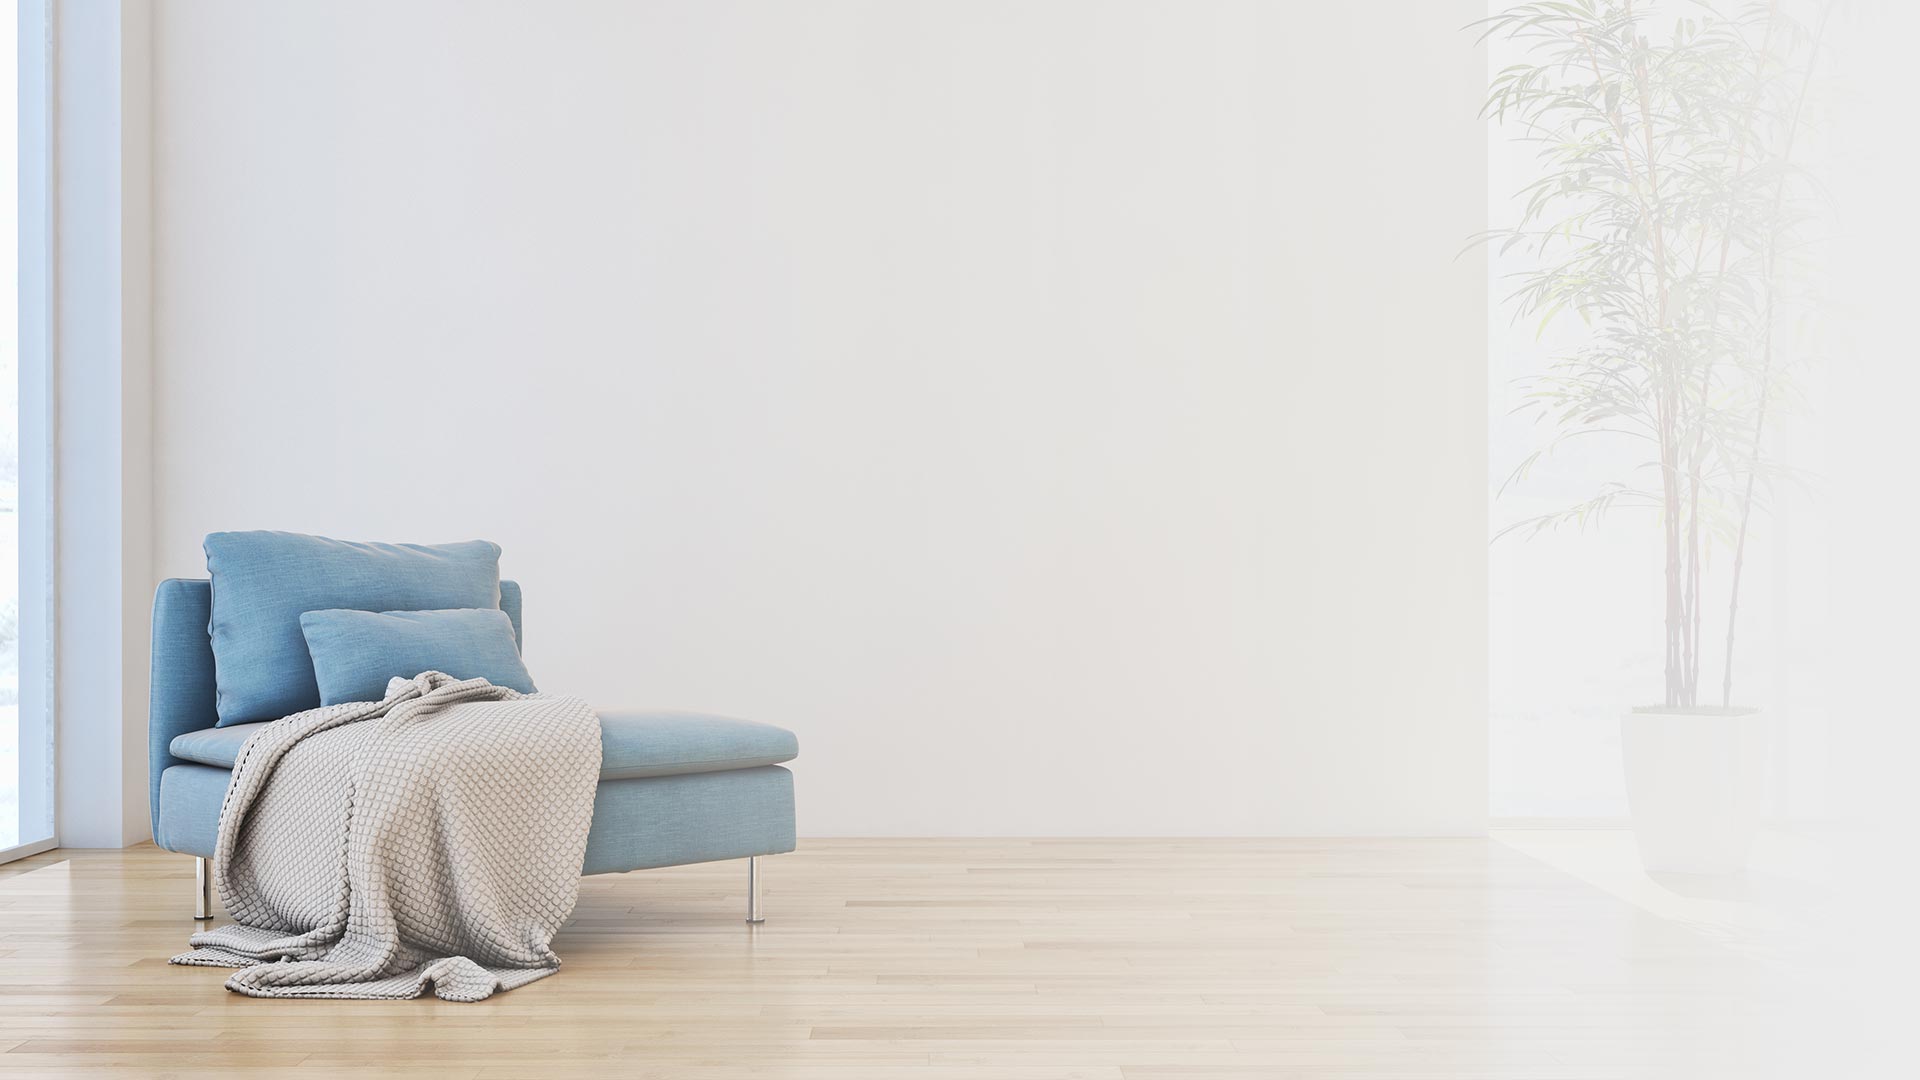 Blauer sessel minimalistisches wohnzimmer